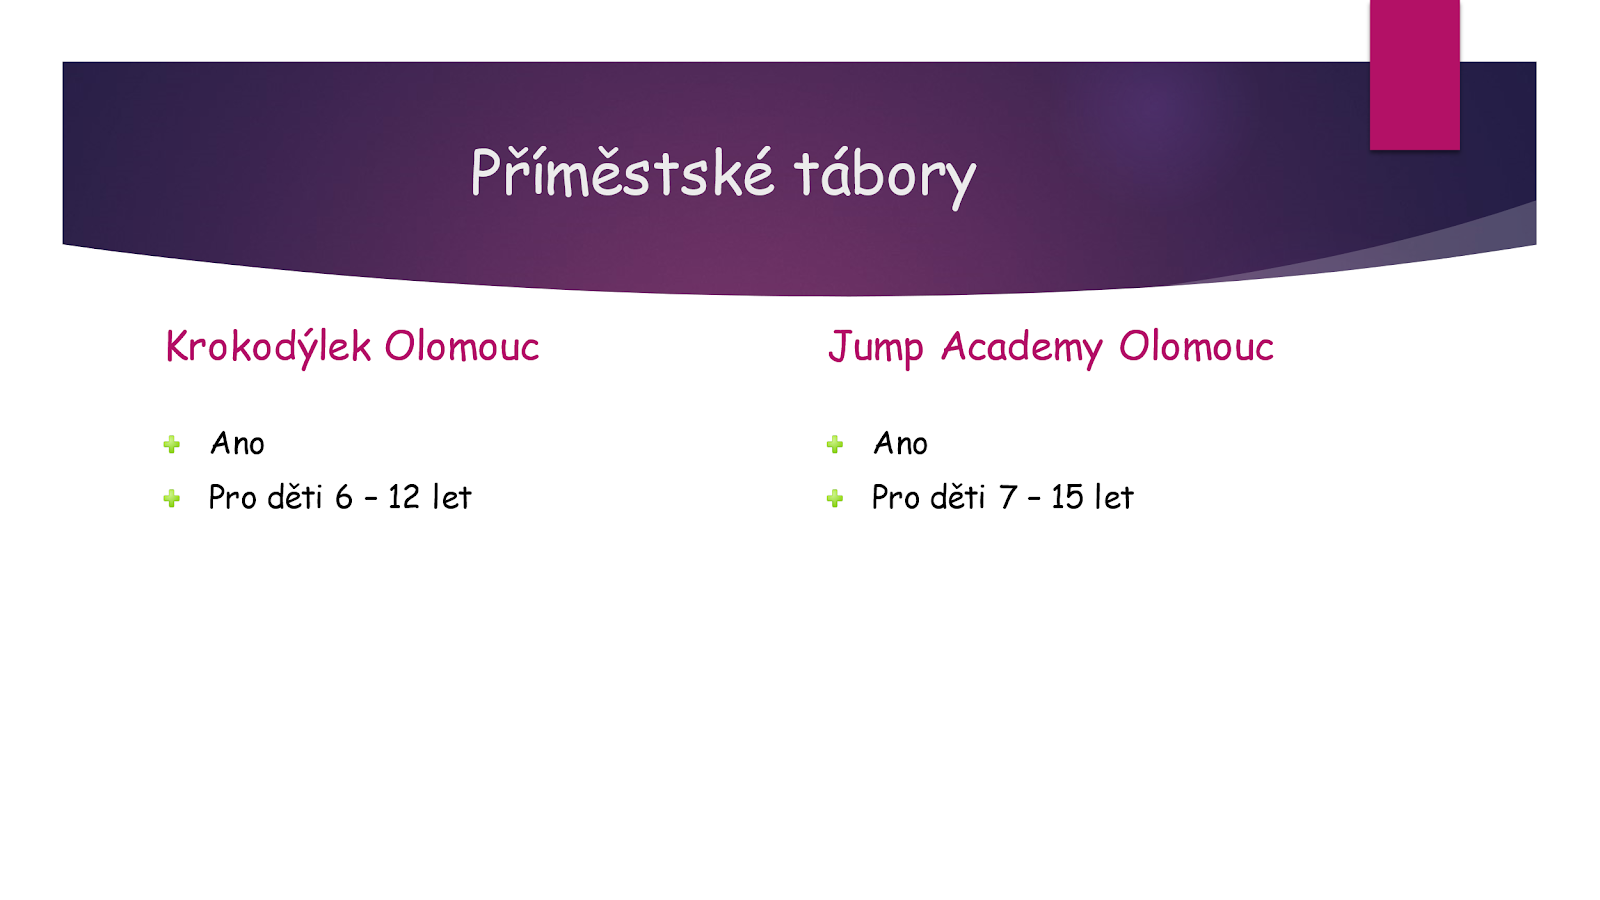 Tábory Jump Academy oproti Krokodýlek Olomouc